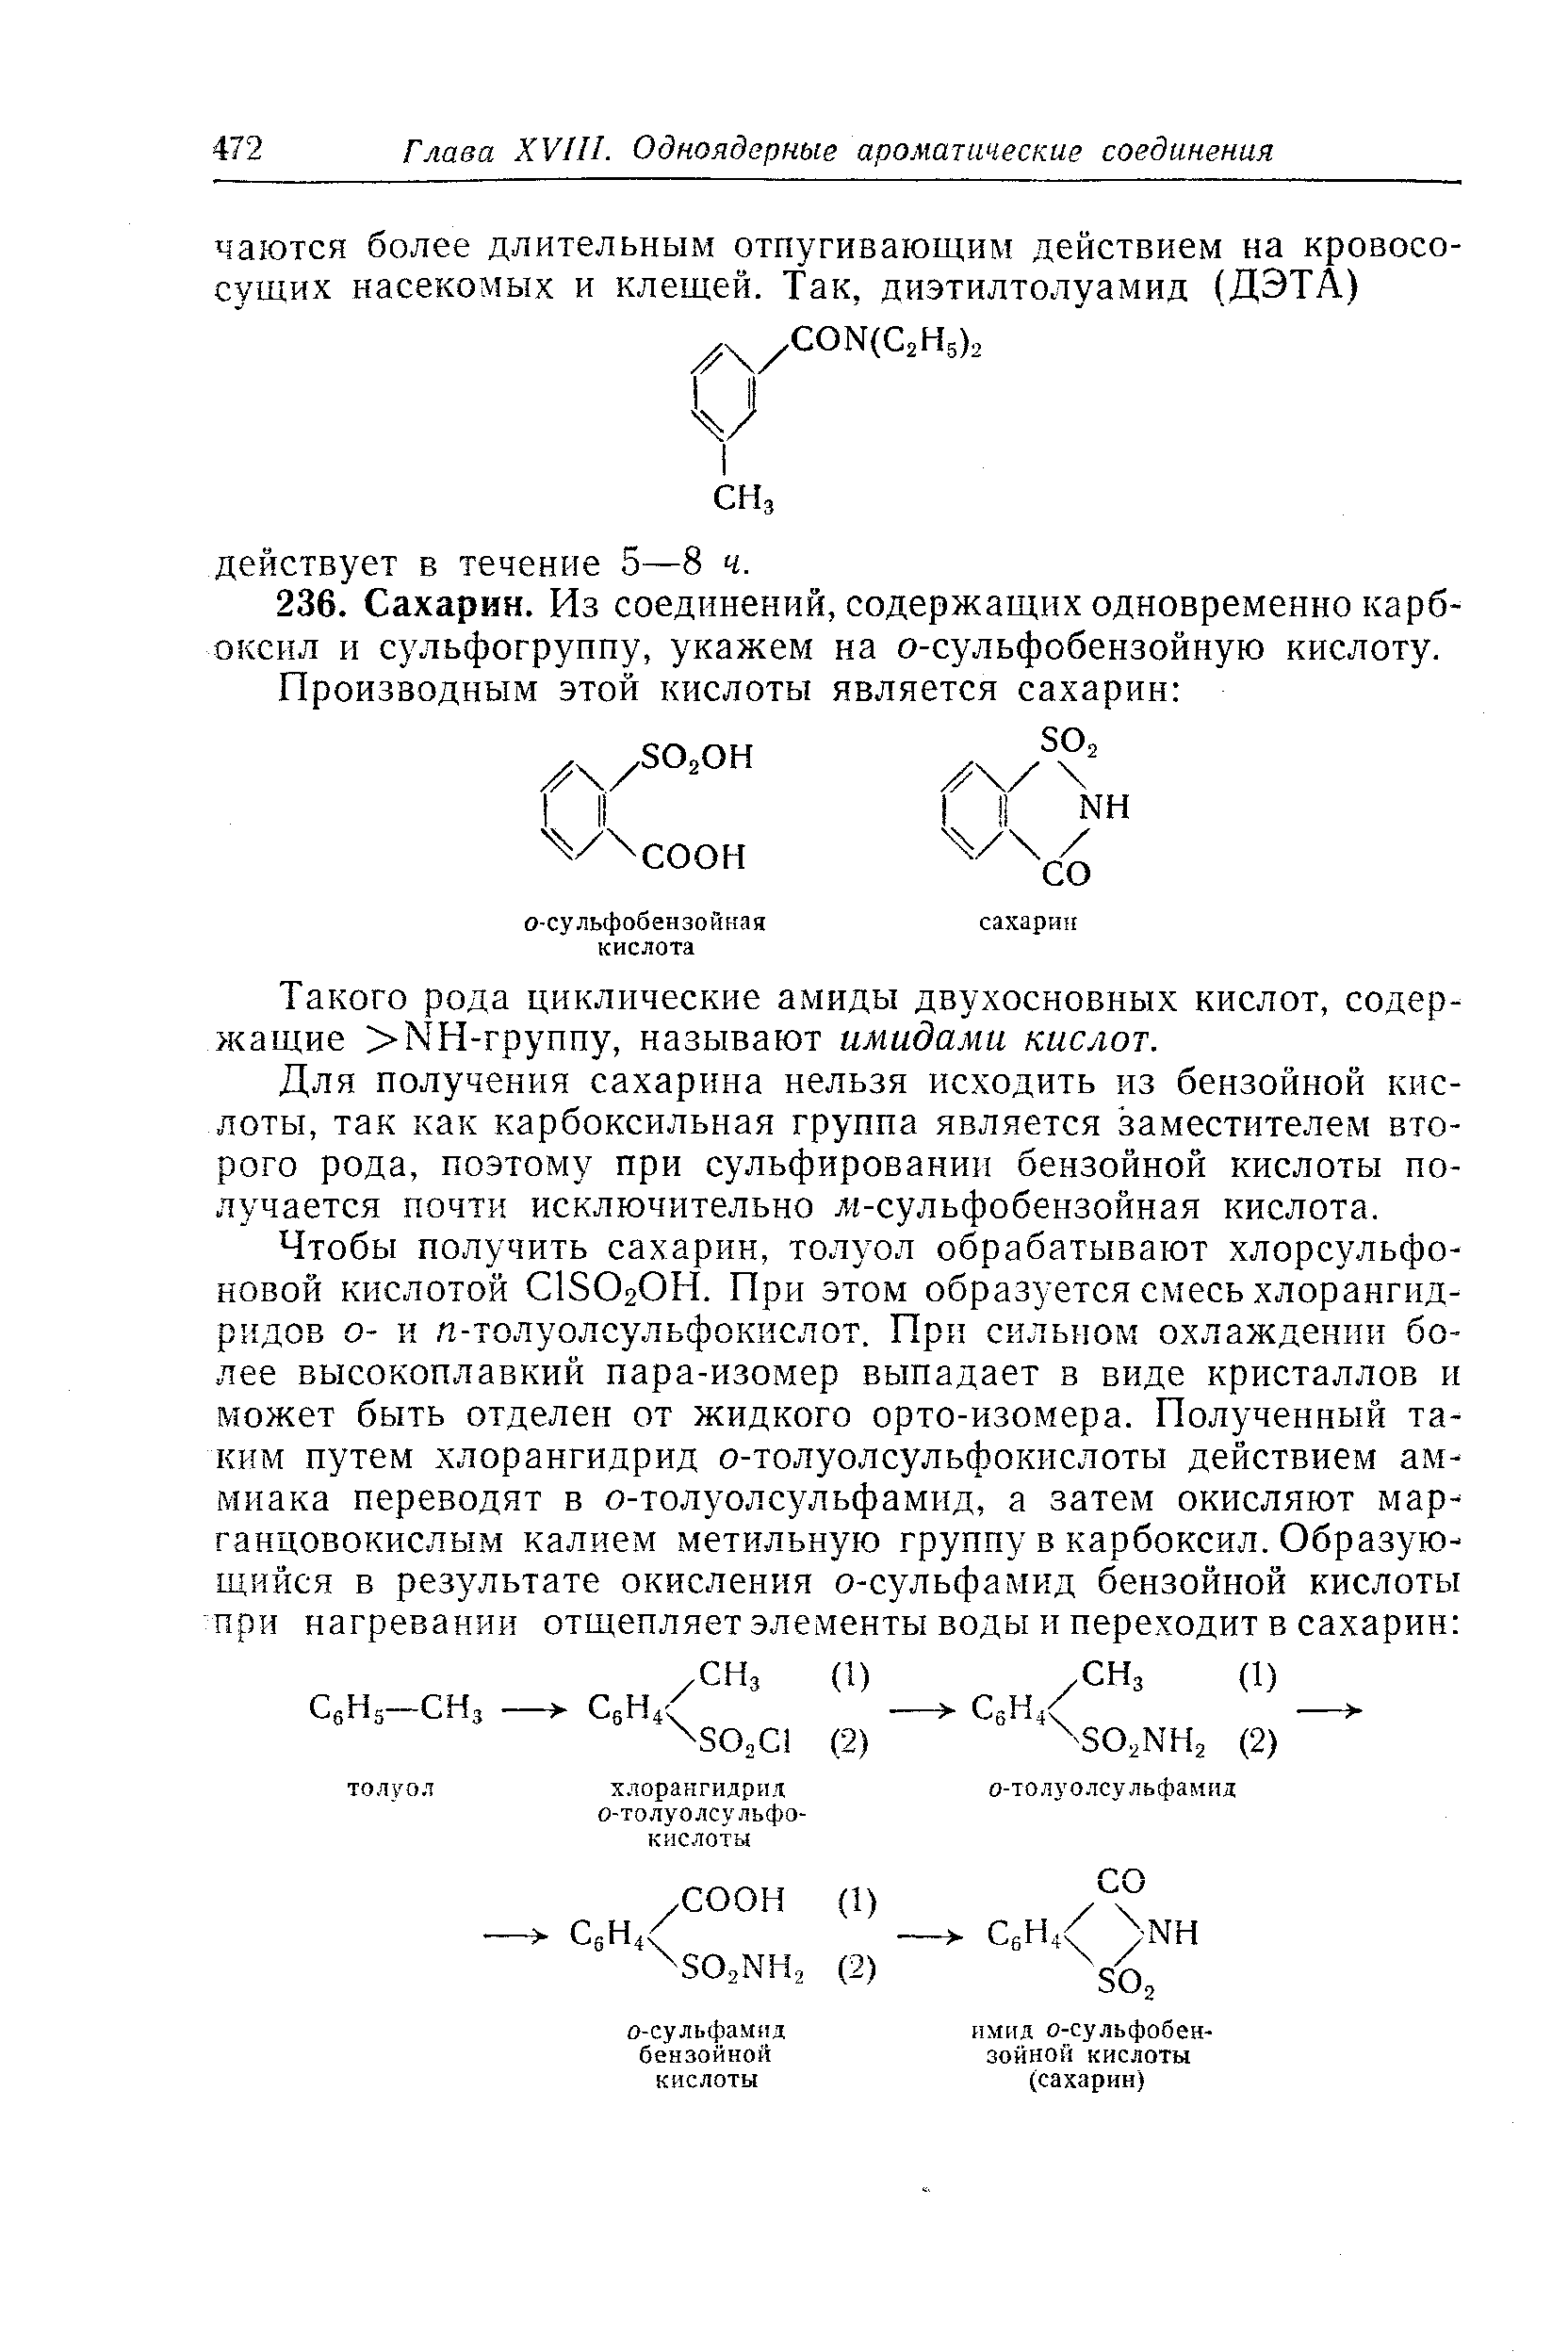 Такого рода циклические амиды двухосновных кислот, содержащие МН-группу, называют амидами кислот.